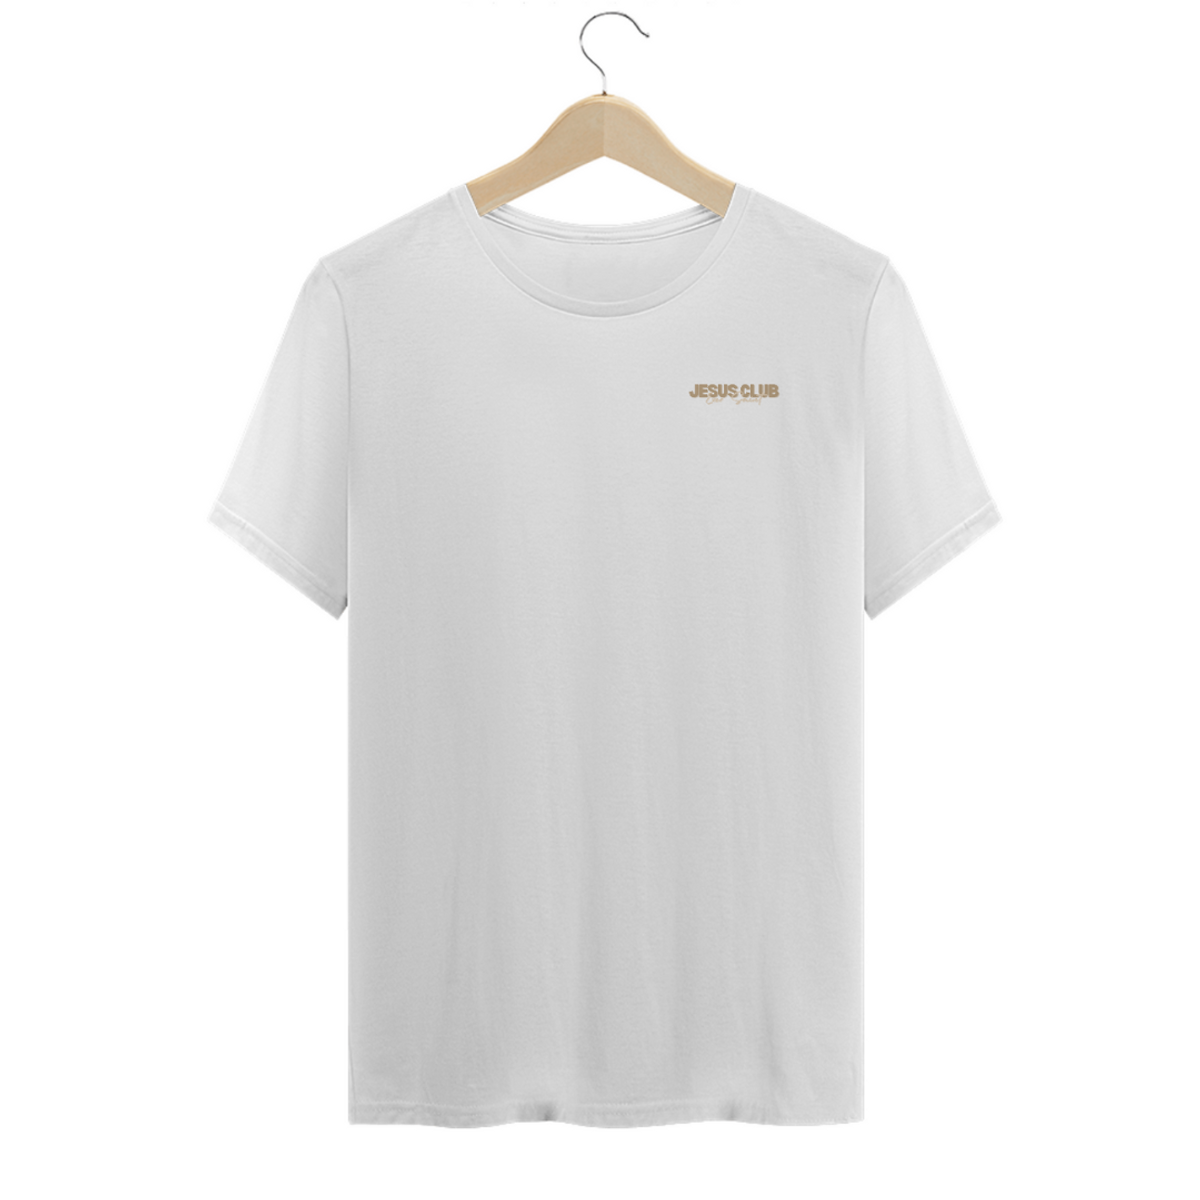 Nome do produto: Camisa Ever Saint Jesus club Off White